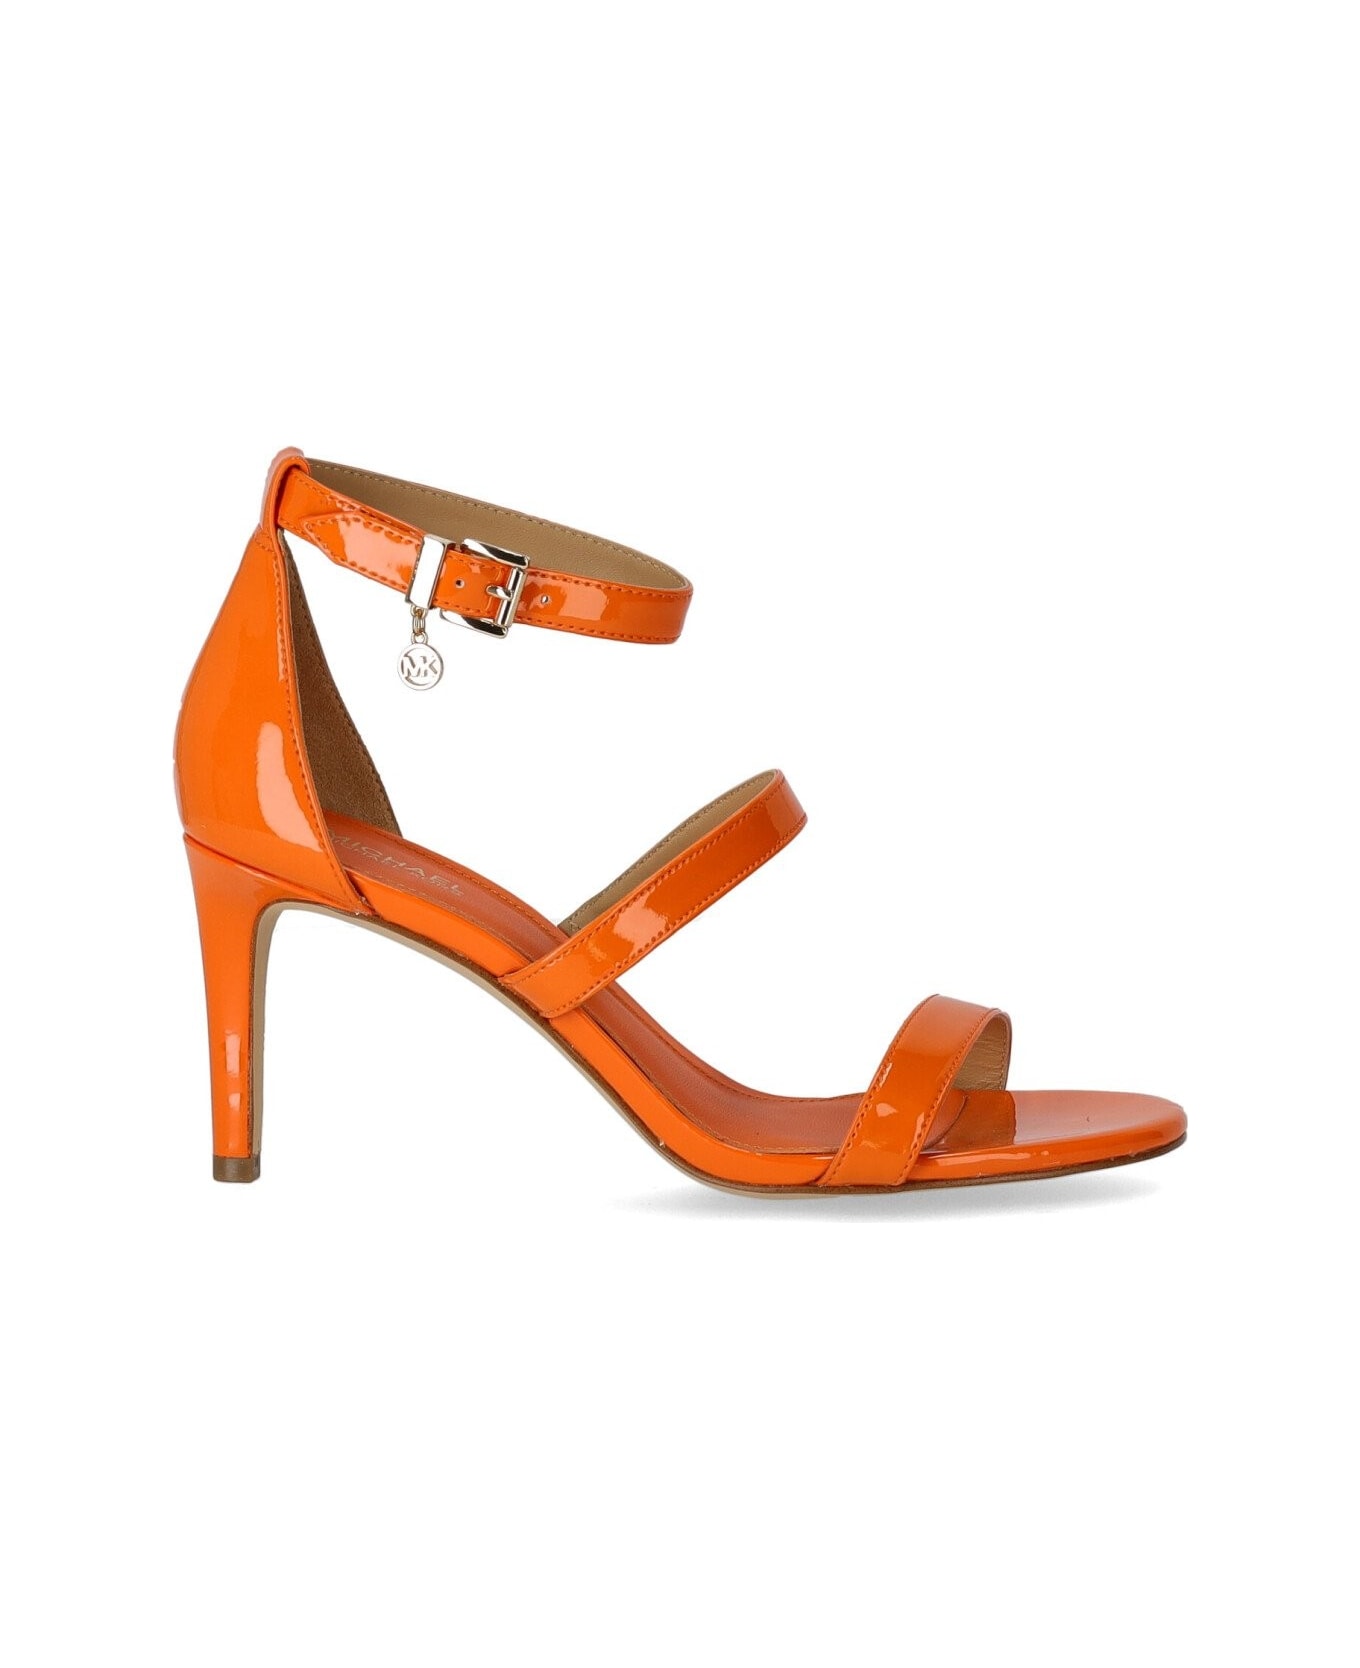 Michael Kors Collection Koda Apricot Heeled Sandal - Apricot